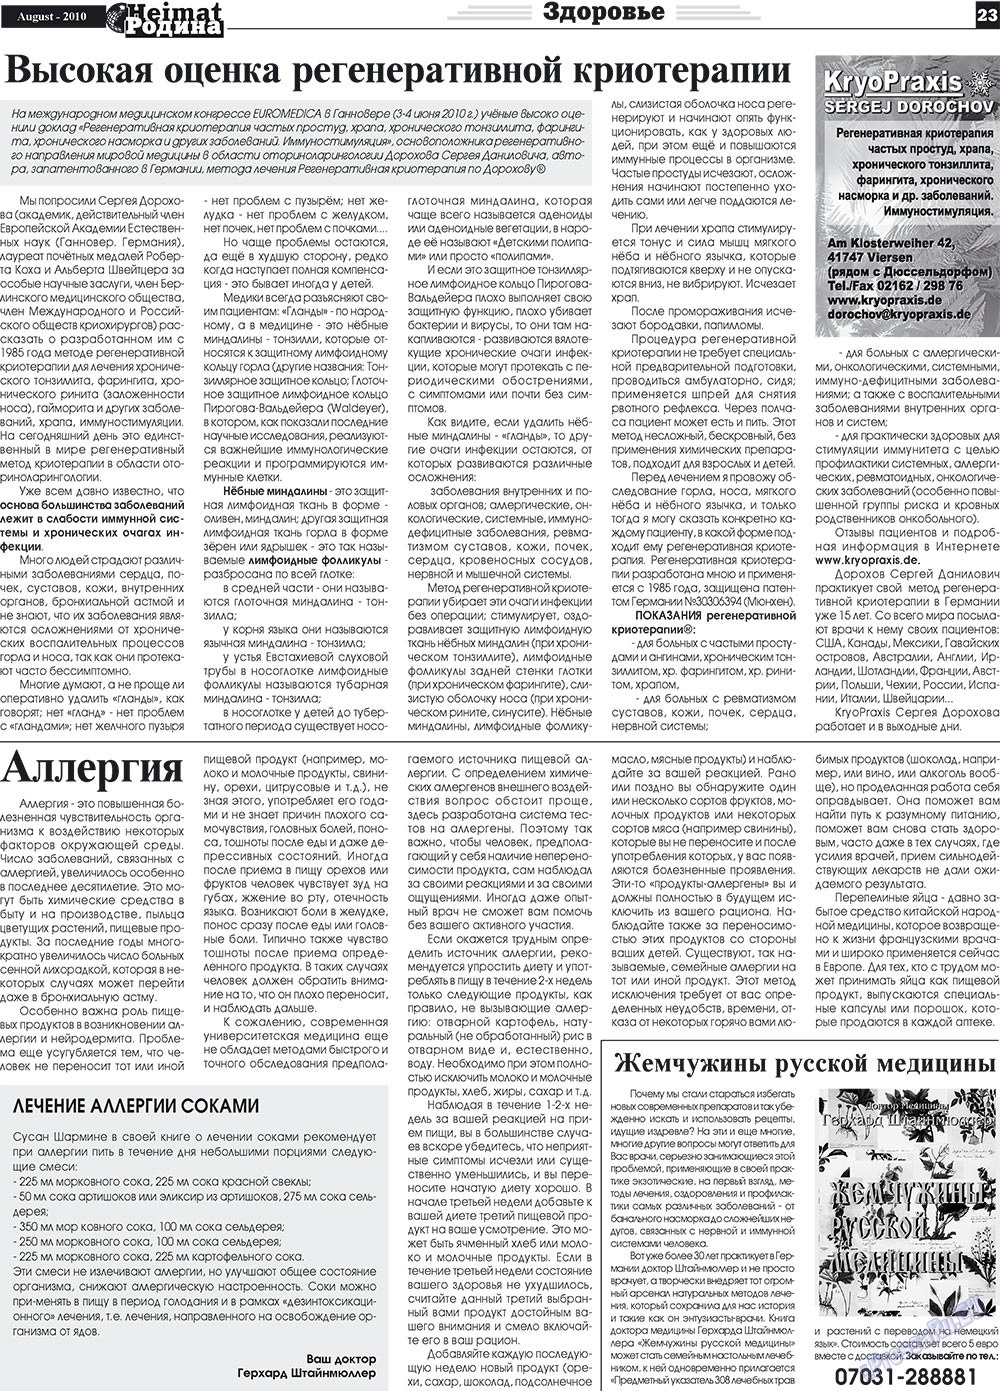 Heimat-Родина (газета). 2010 год, номер 8, стр. 23